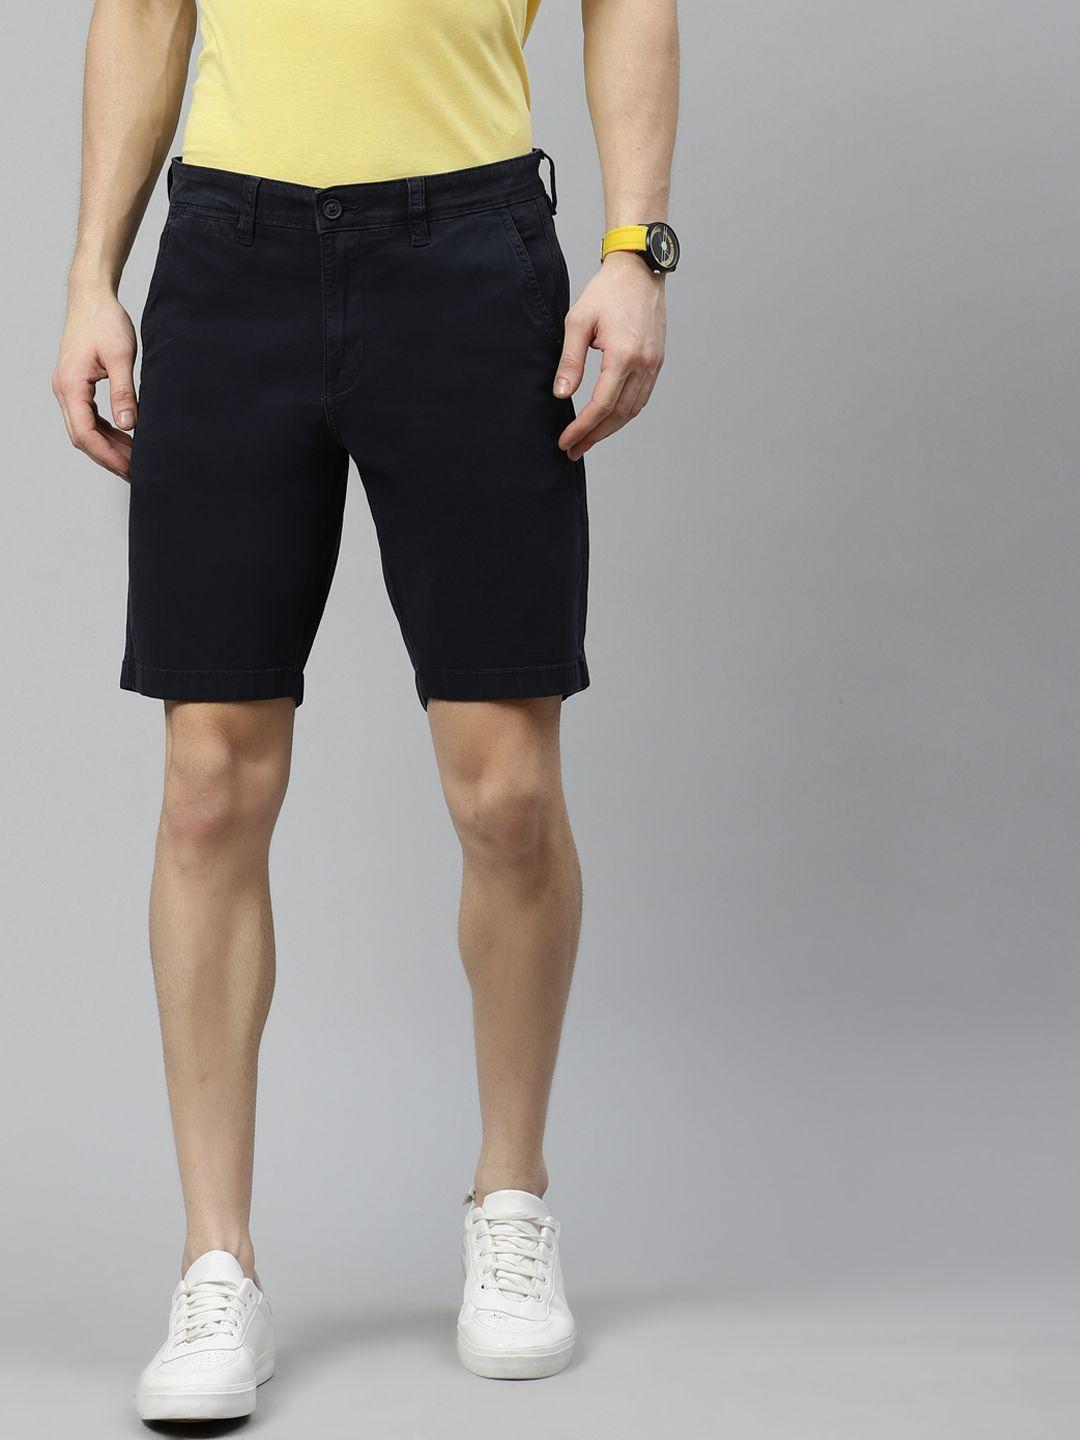 nautica men navy blue solid slim fit regular shorts